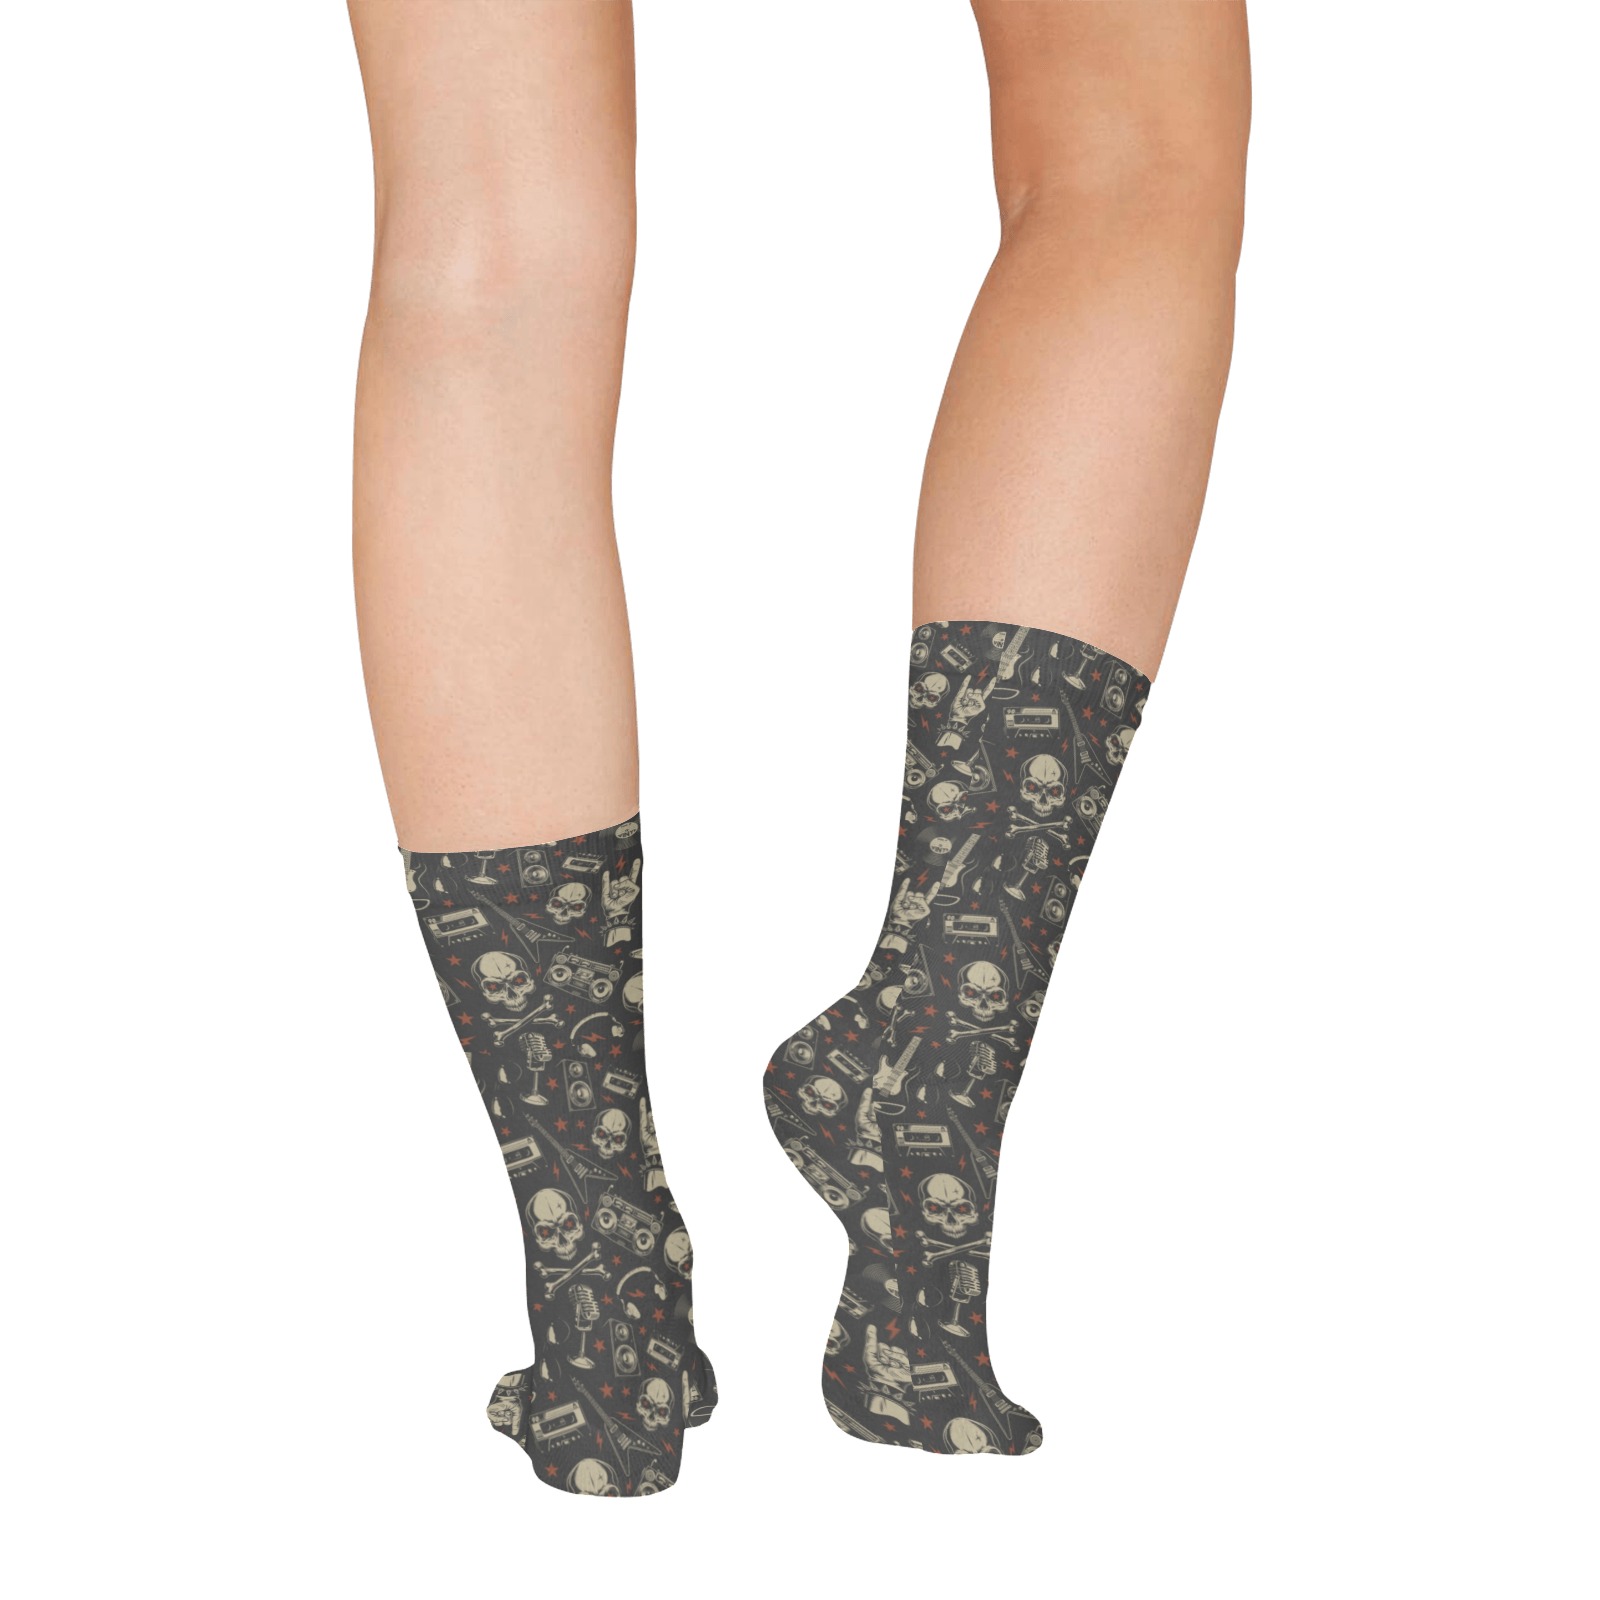 Grunge Seamless Pattern All Over Print Socks for Women